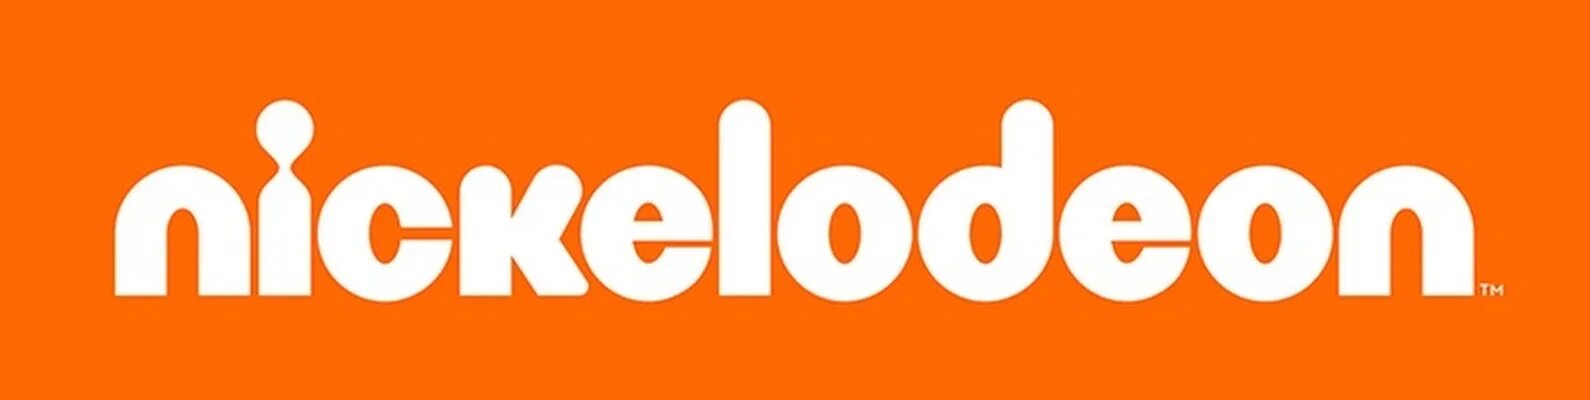 Телеканал никелодеон. Никелодеон. Канал Nickelodeon. Телеканал Nickelodeon логотип.